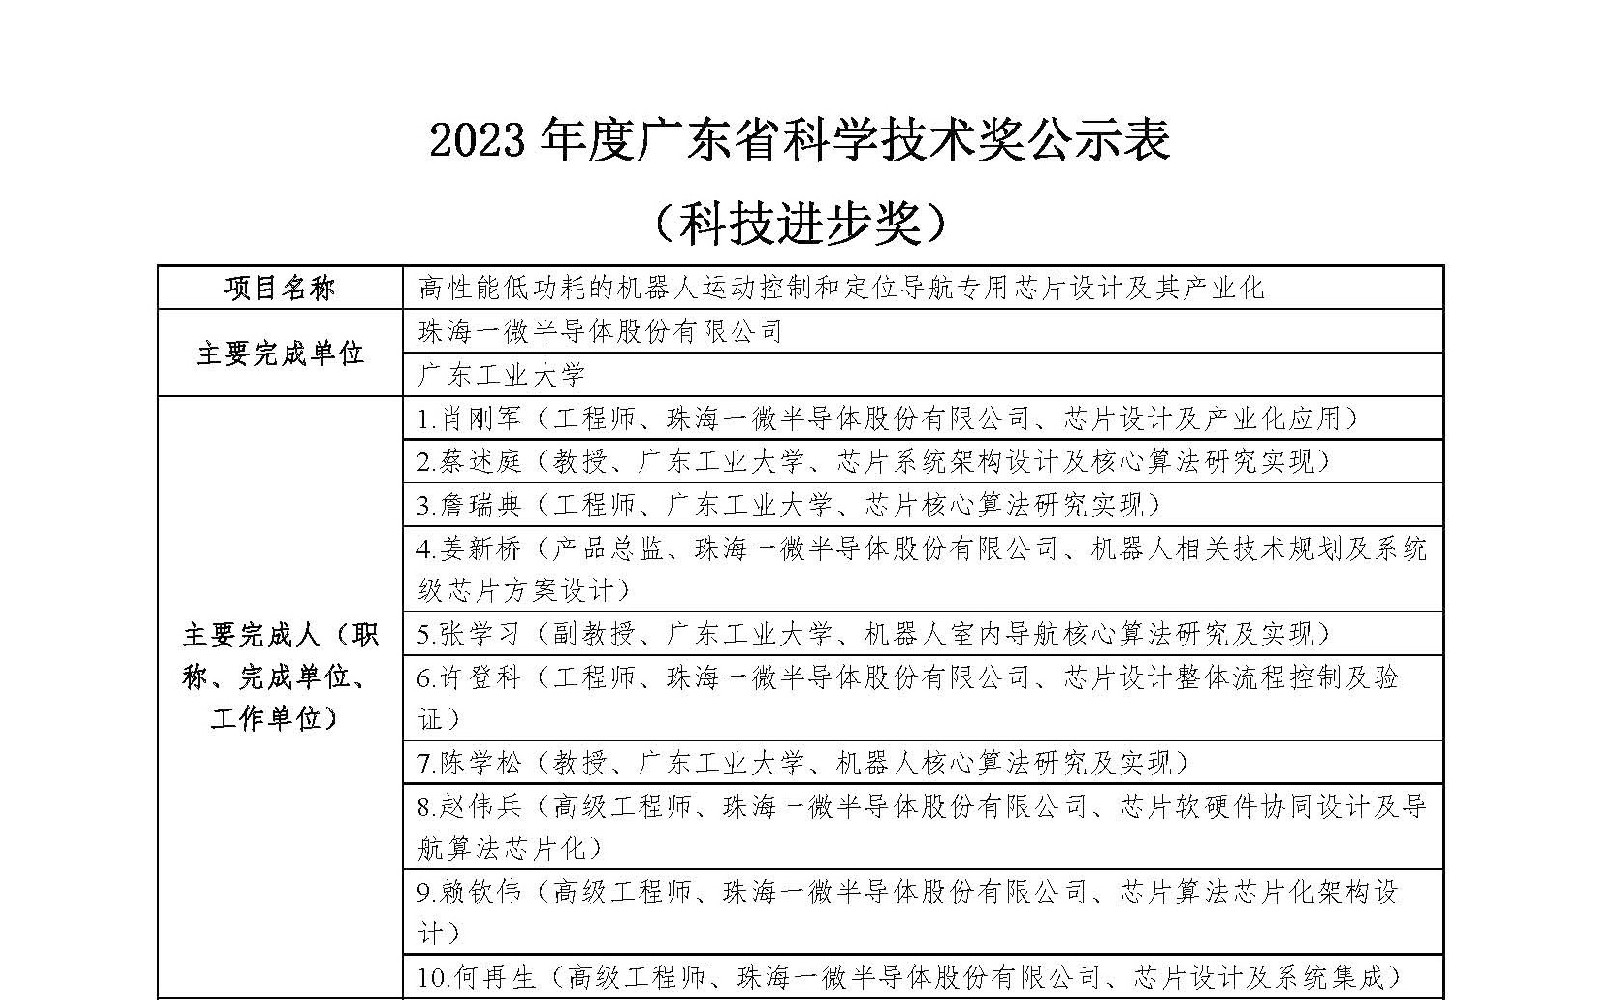 2023年度广东省科学技术奖公示表